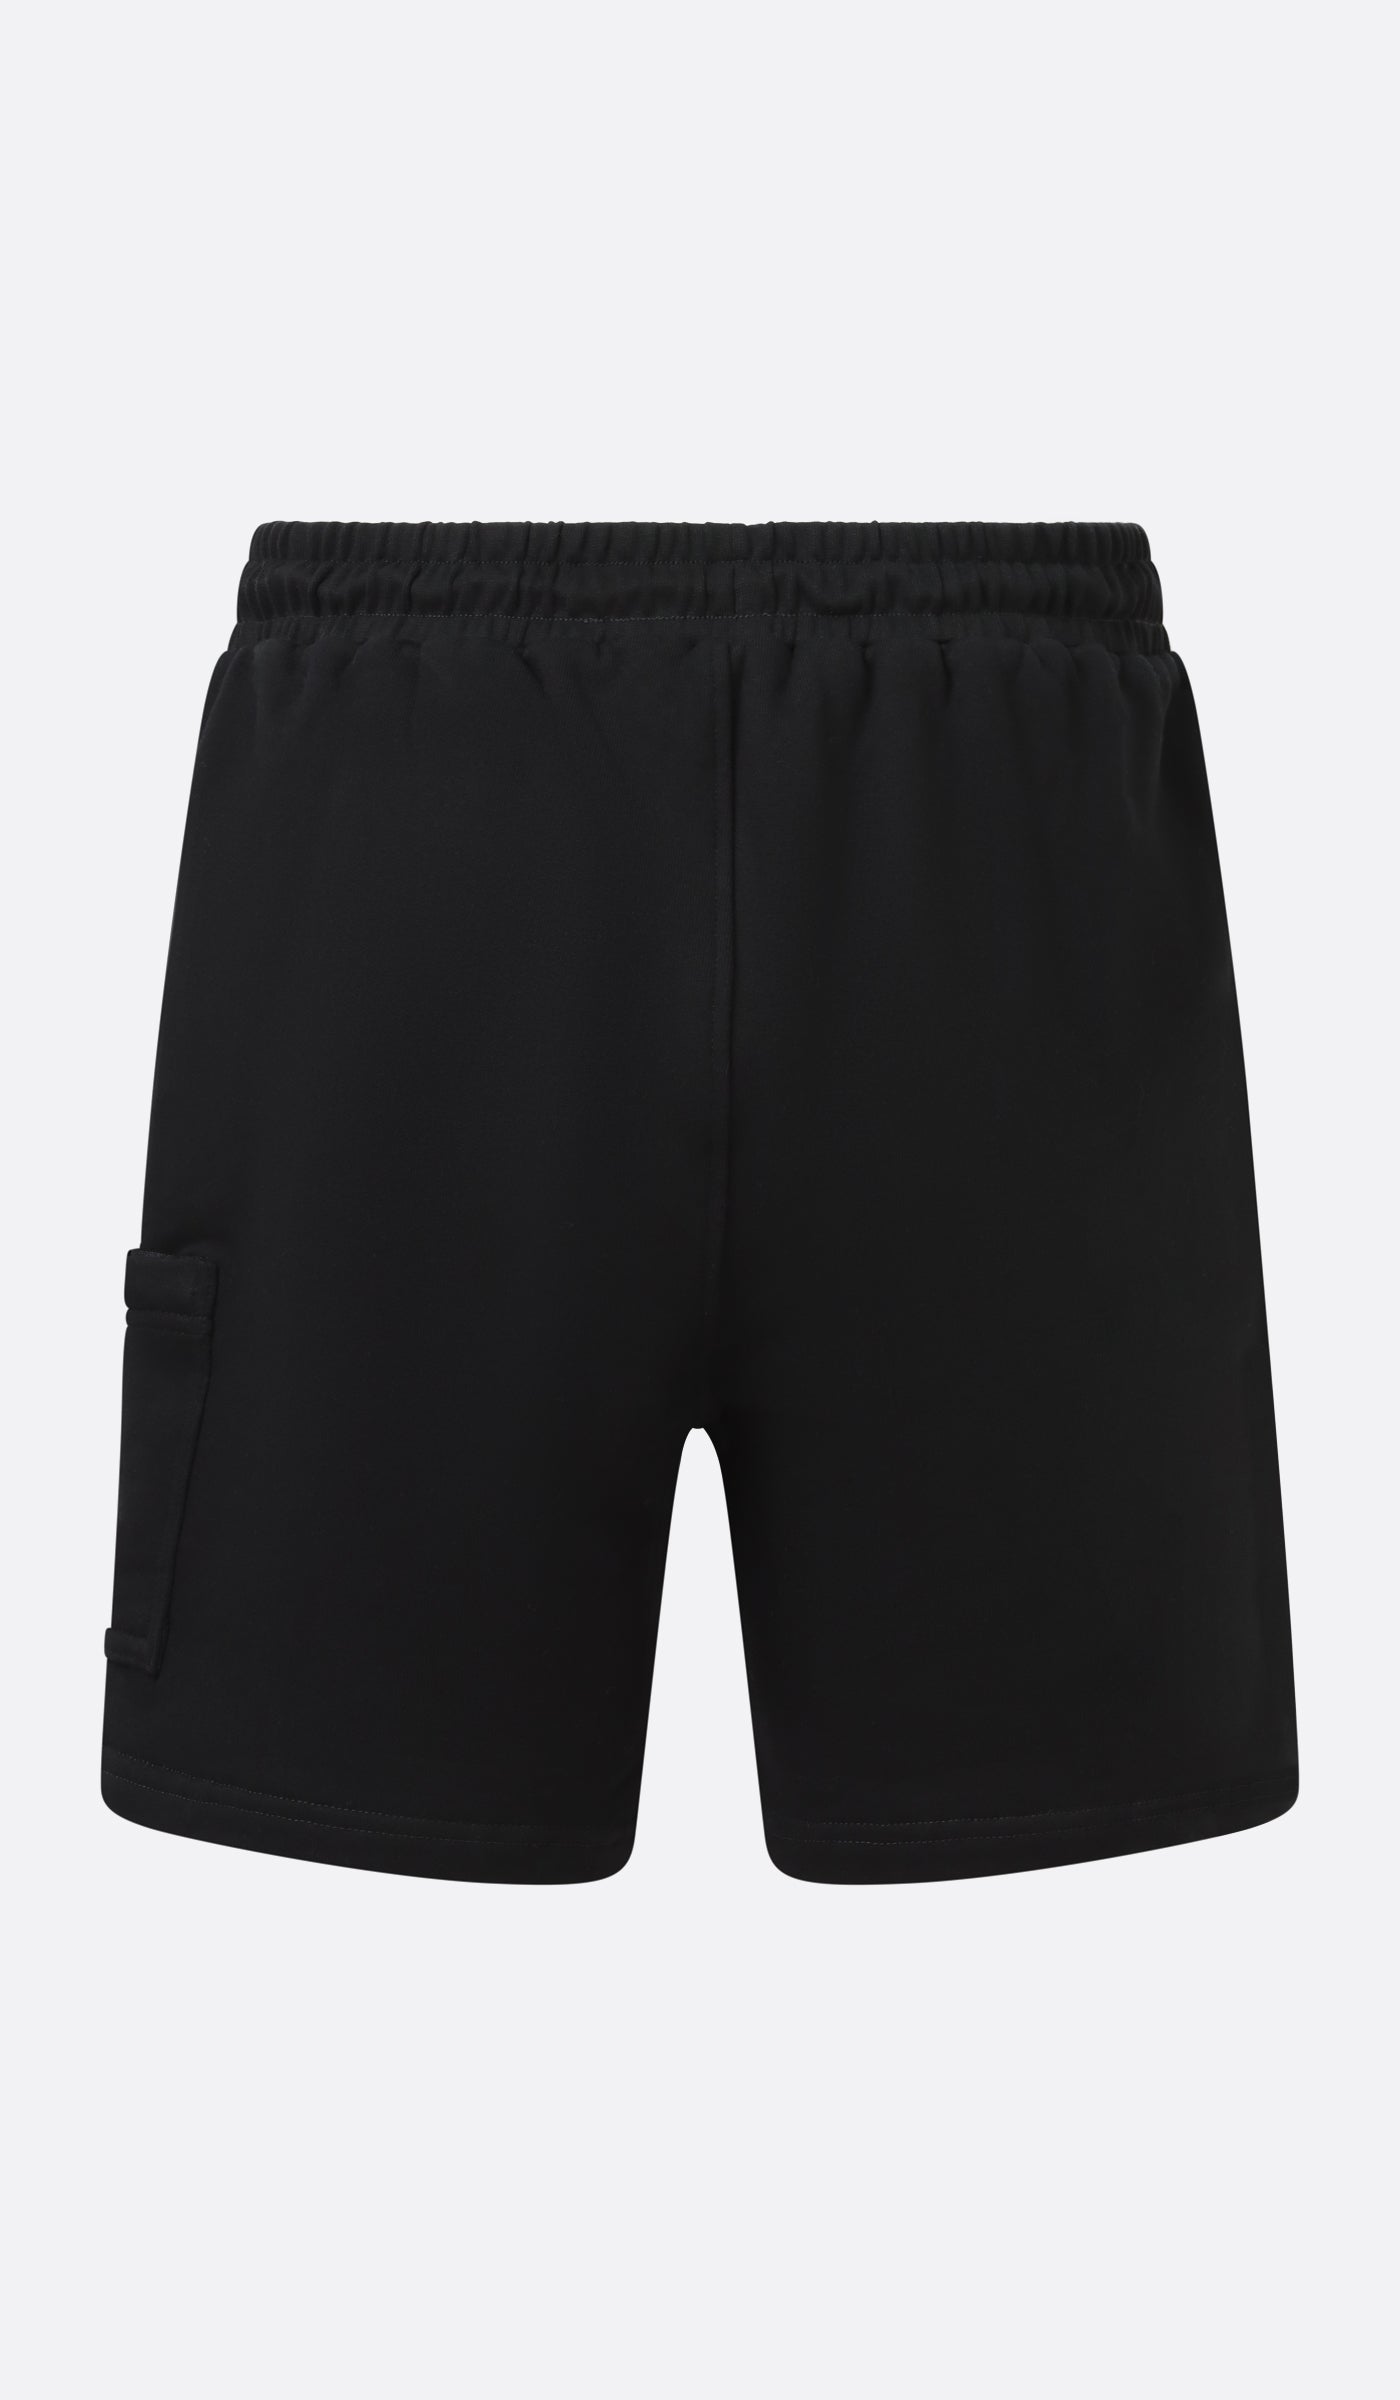 DJK Ninja Cotton Shorts